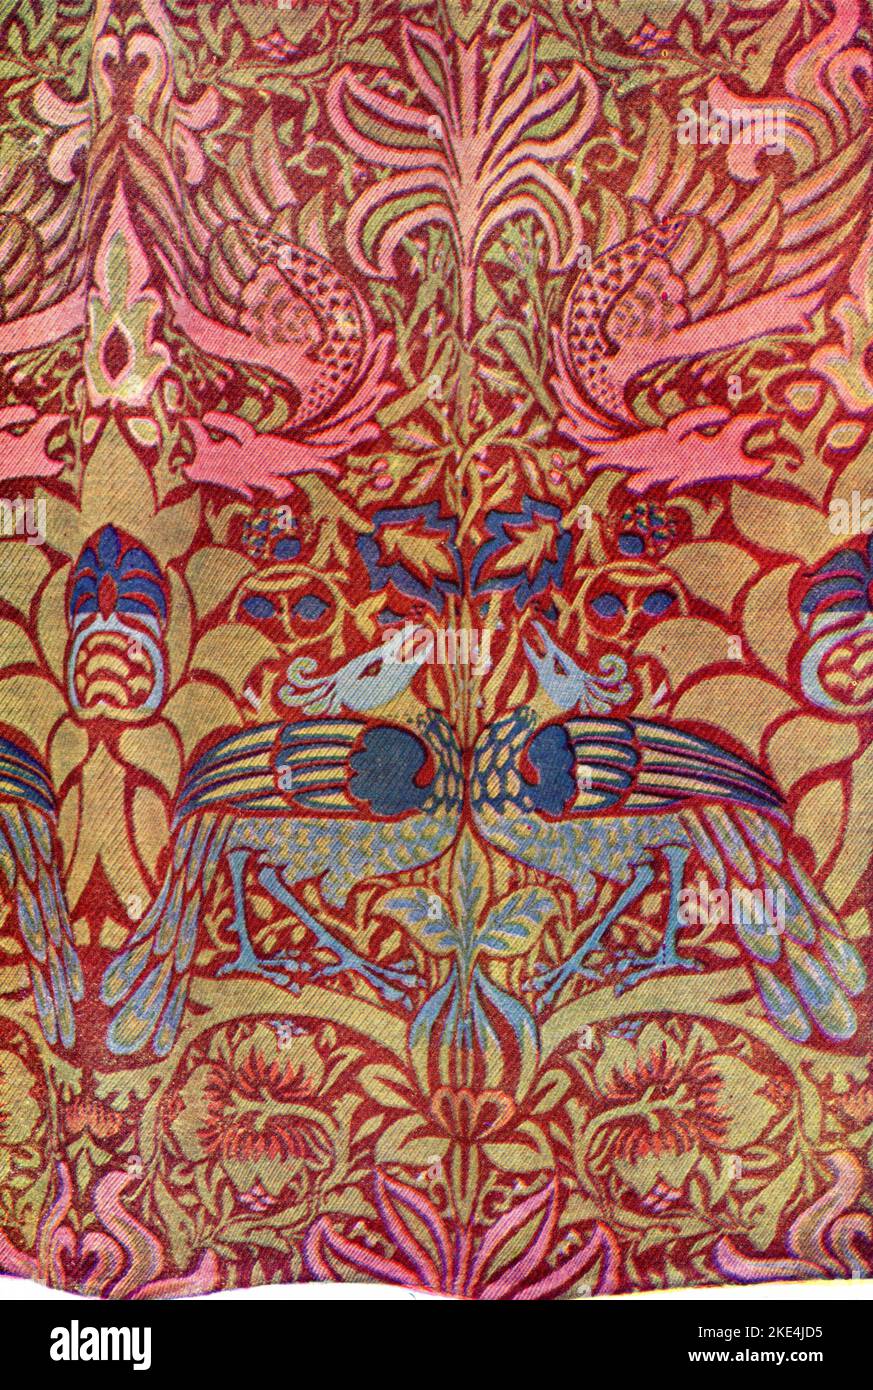 « Peacock & Dragon », 1878. Tissu en laine conçu par William Morris. Produit par Morris & Co. William Morris (1834-1896) est un designer, artiste et écrivain anglais de textile. L'éminent socialiste était étroitement associé à la Fraternité pré-Raphaelite et au mouvement des arts et métiers d'art anglais. Banque D'Images